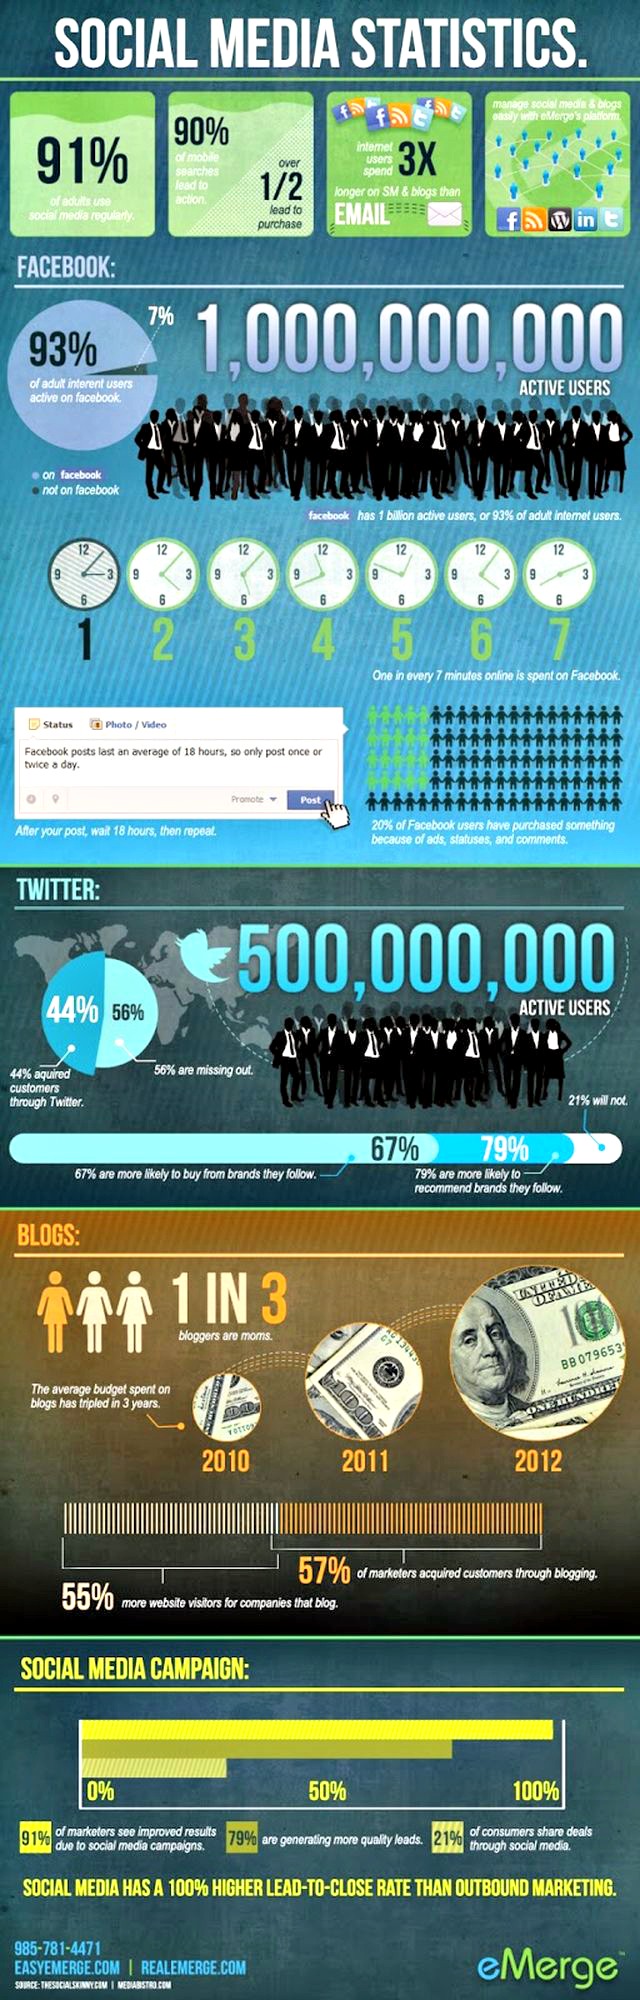 Otra infografía con muchos datos estadísticos de Social Media